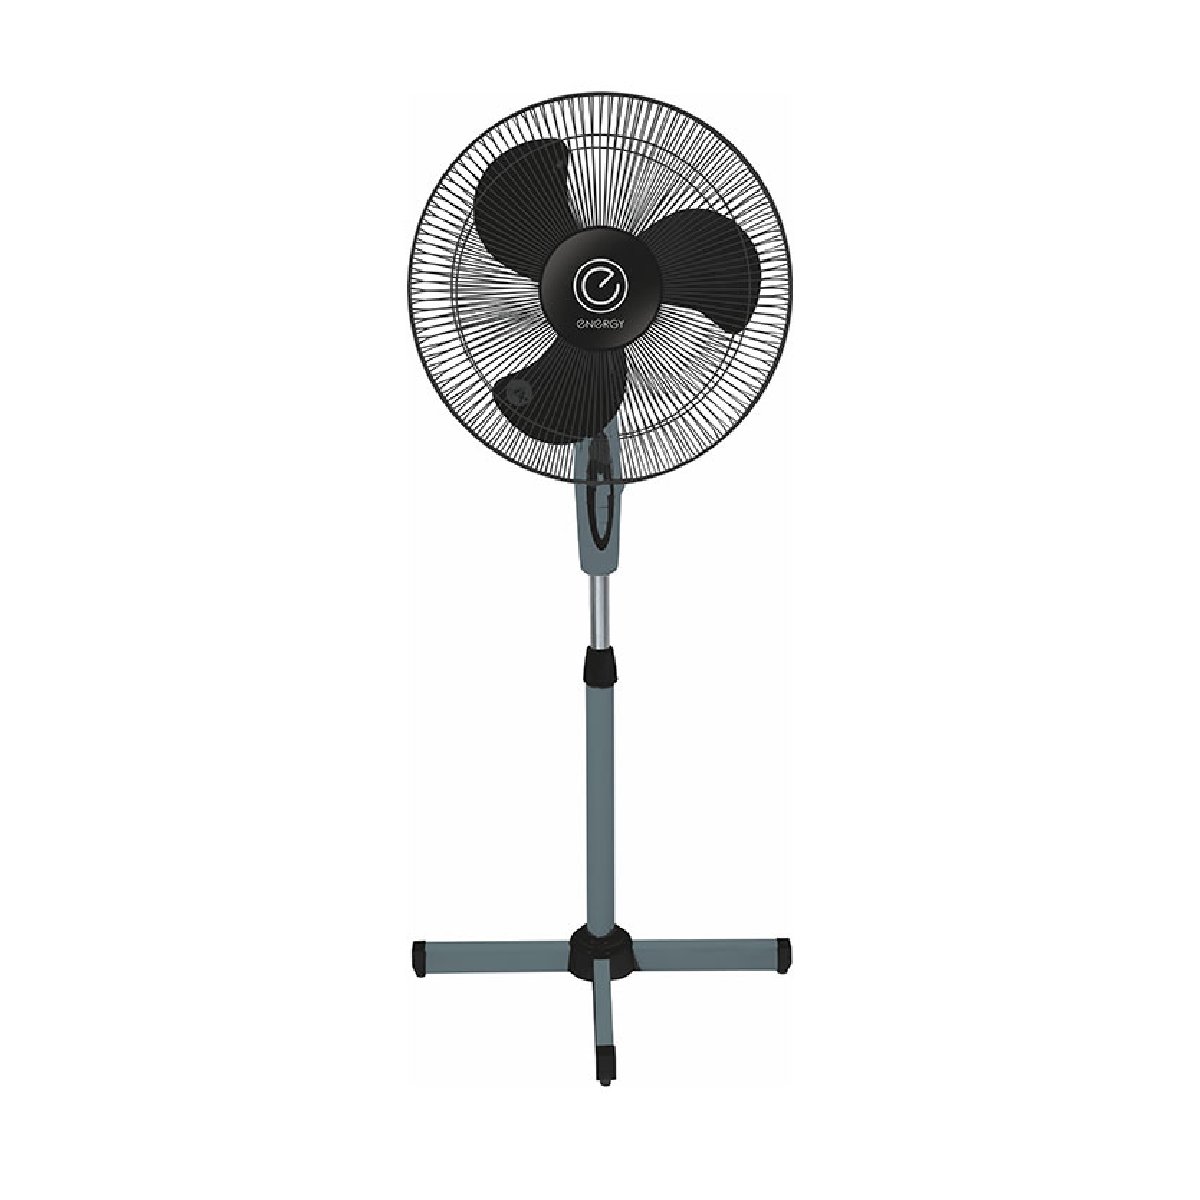 Вентилятор напольный Energy EN-1659 диам.40см,4 0 Вт, 3 скорости, черный (030382)